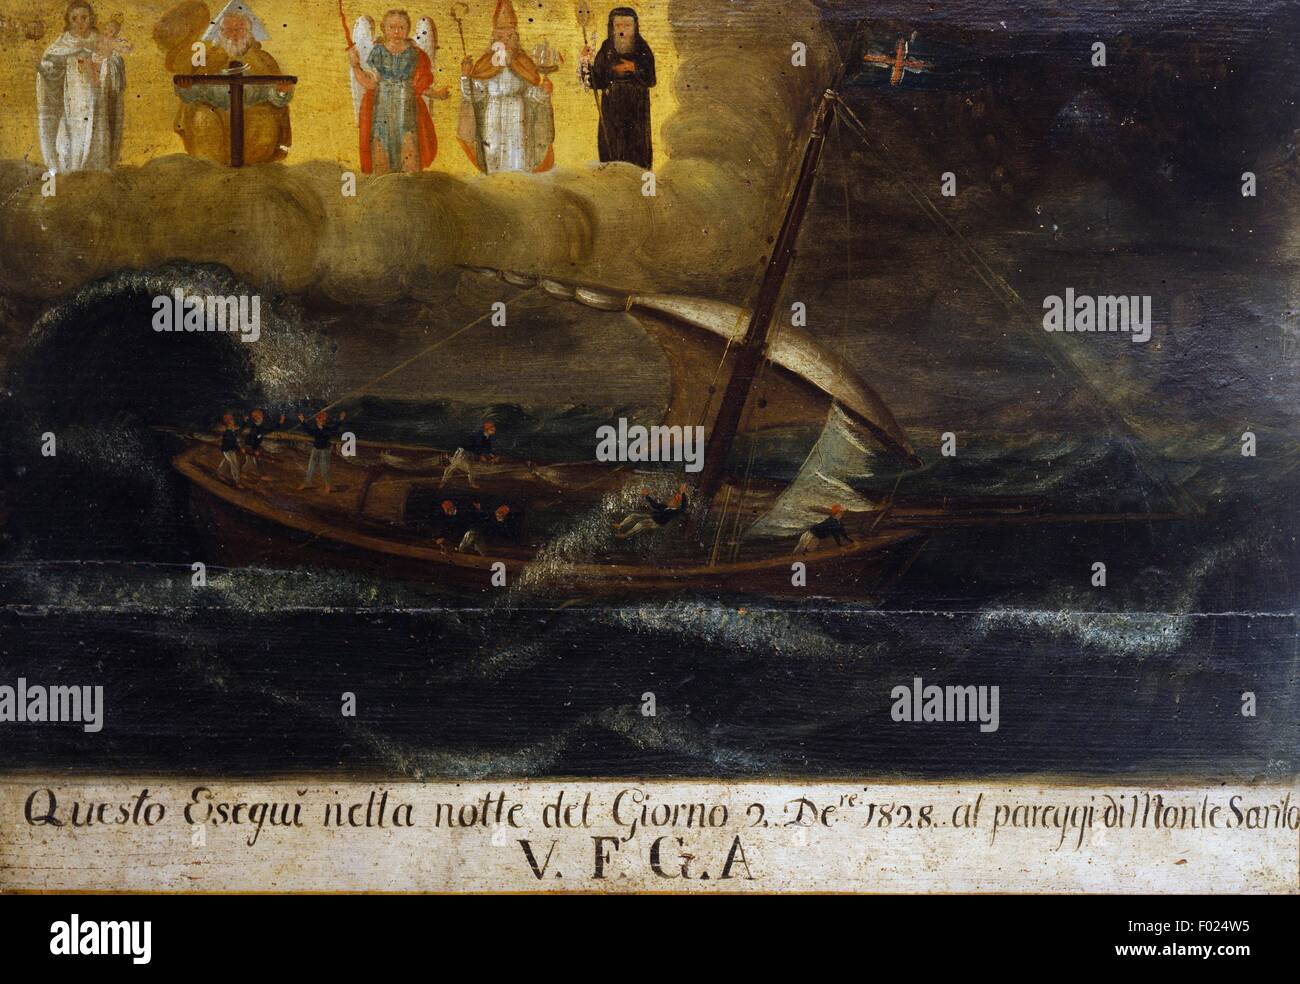 Voile sur la mer déchaînée, ex-voto marins, l'Italie, 19e siècle. Banque D'Images